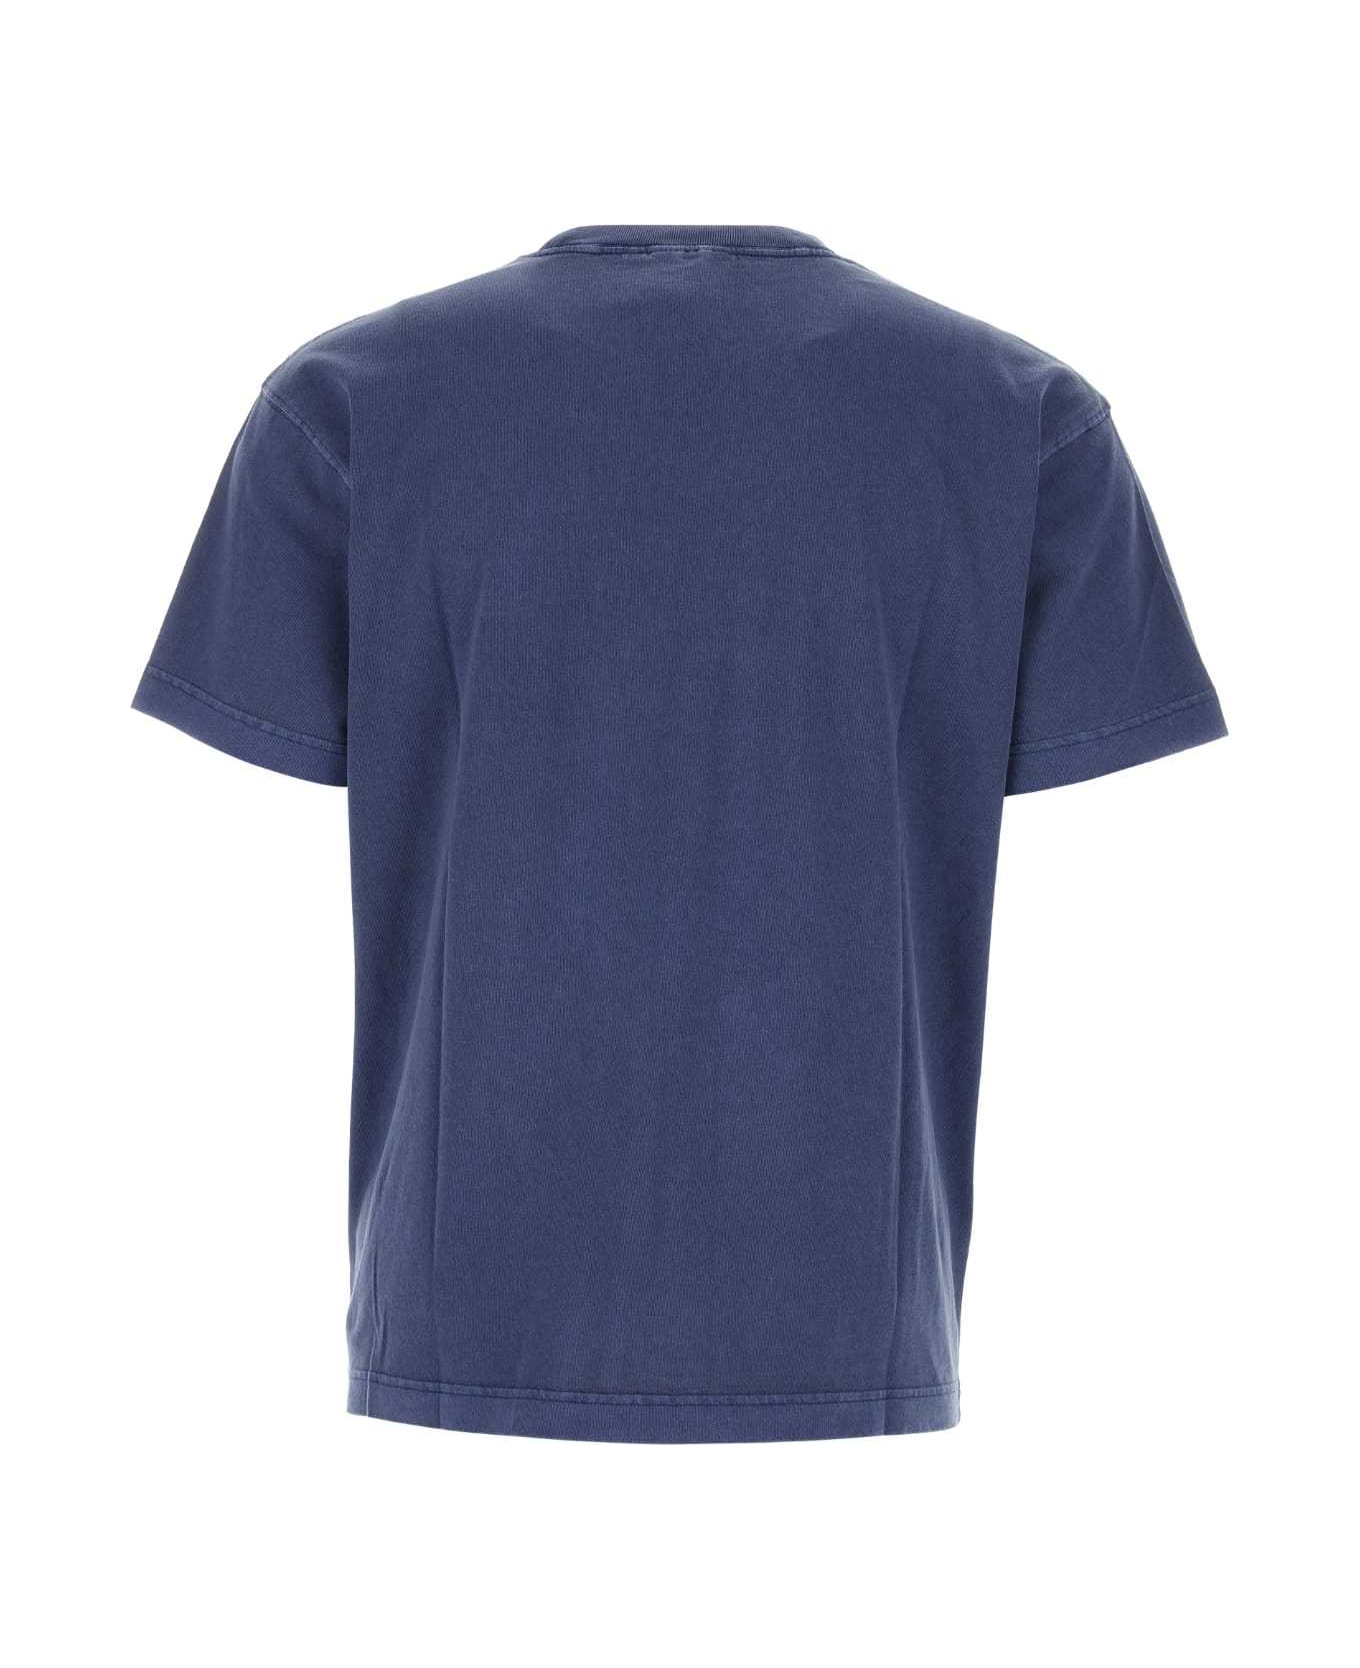 Carhartt Air Force Blue Cotton Oversize S/s Nelson T-shirt - ELDER シャツ